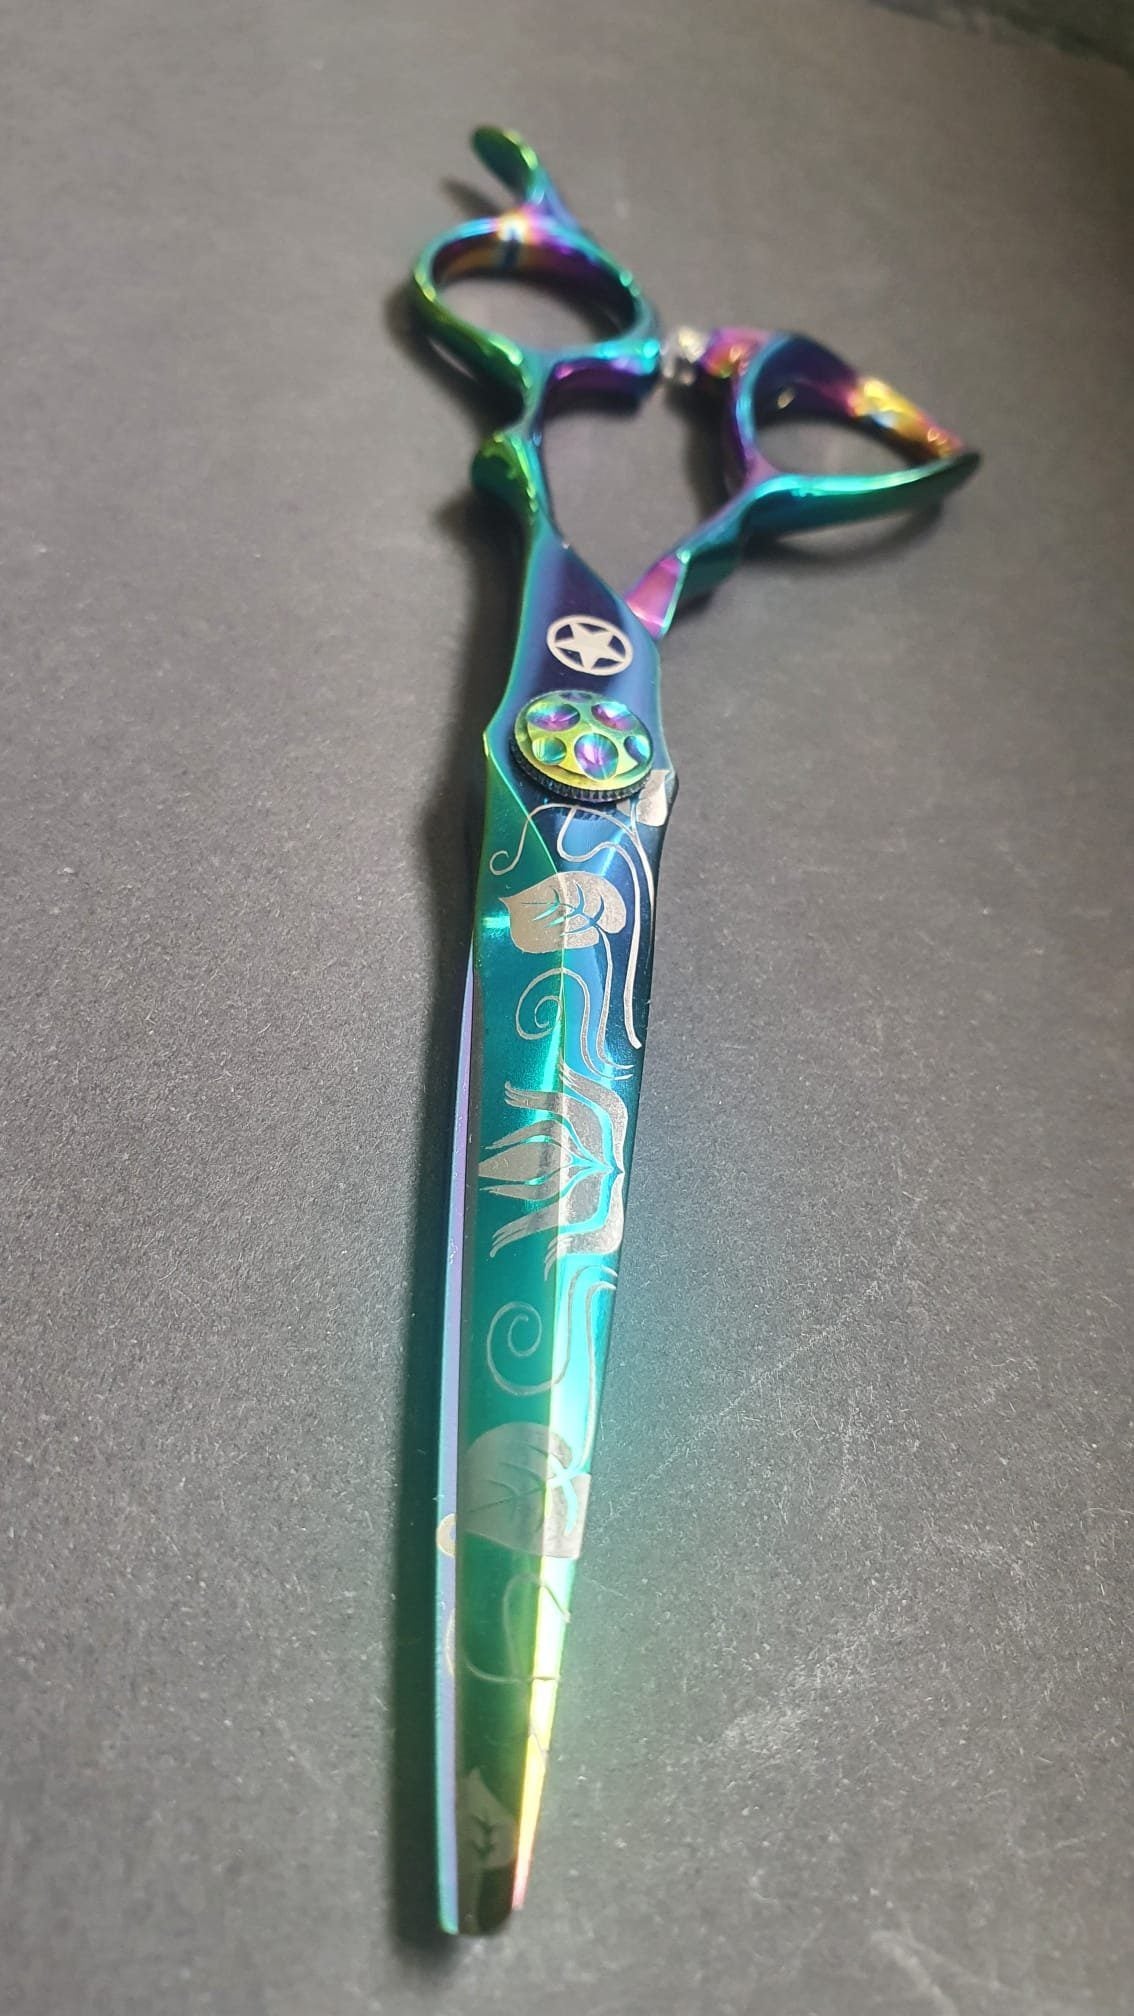 Sternsteiger Green Blitz hair scissors 6 inches